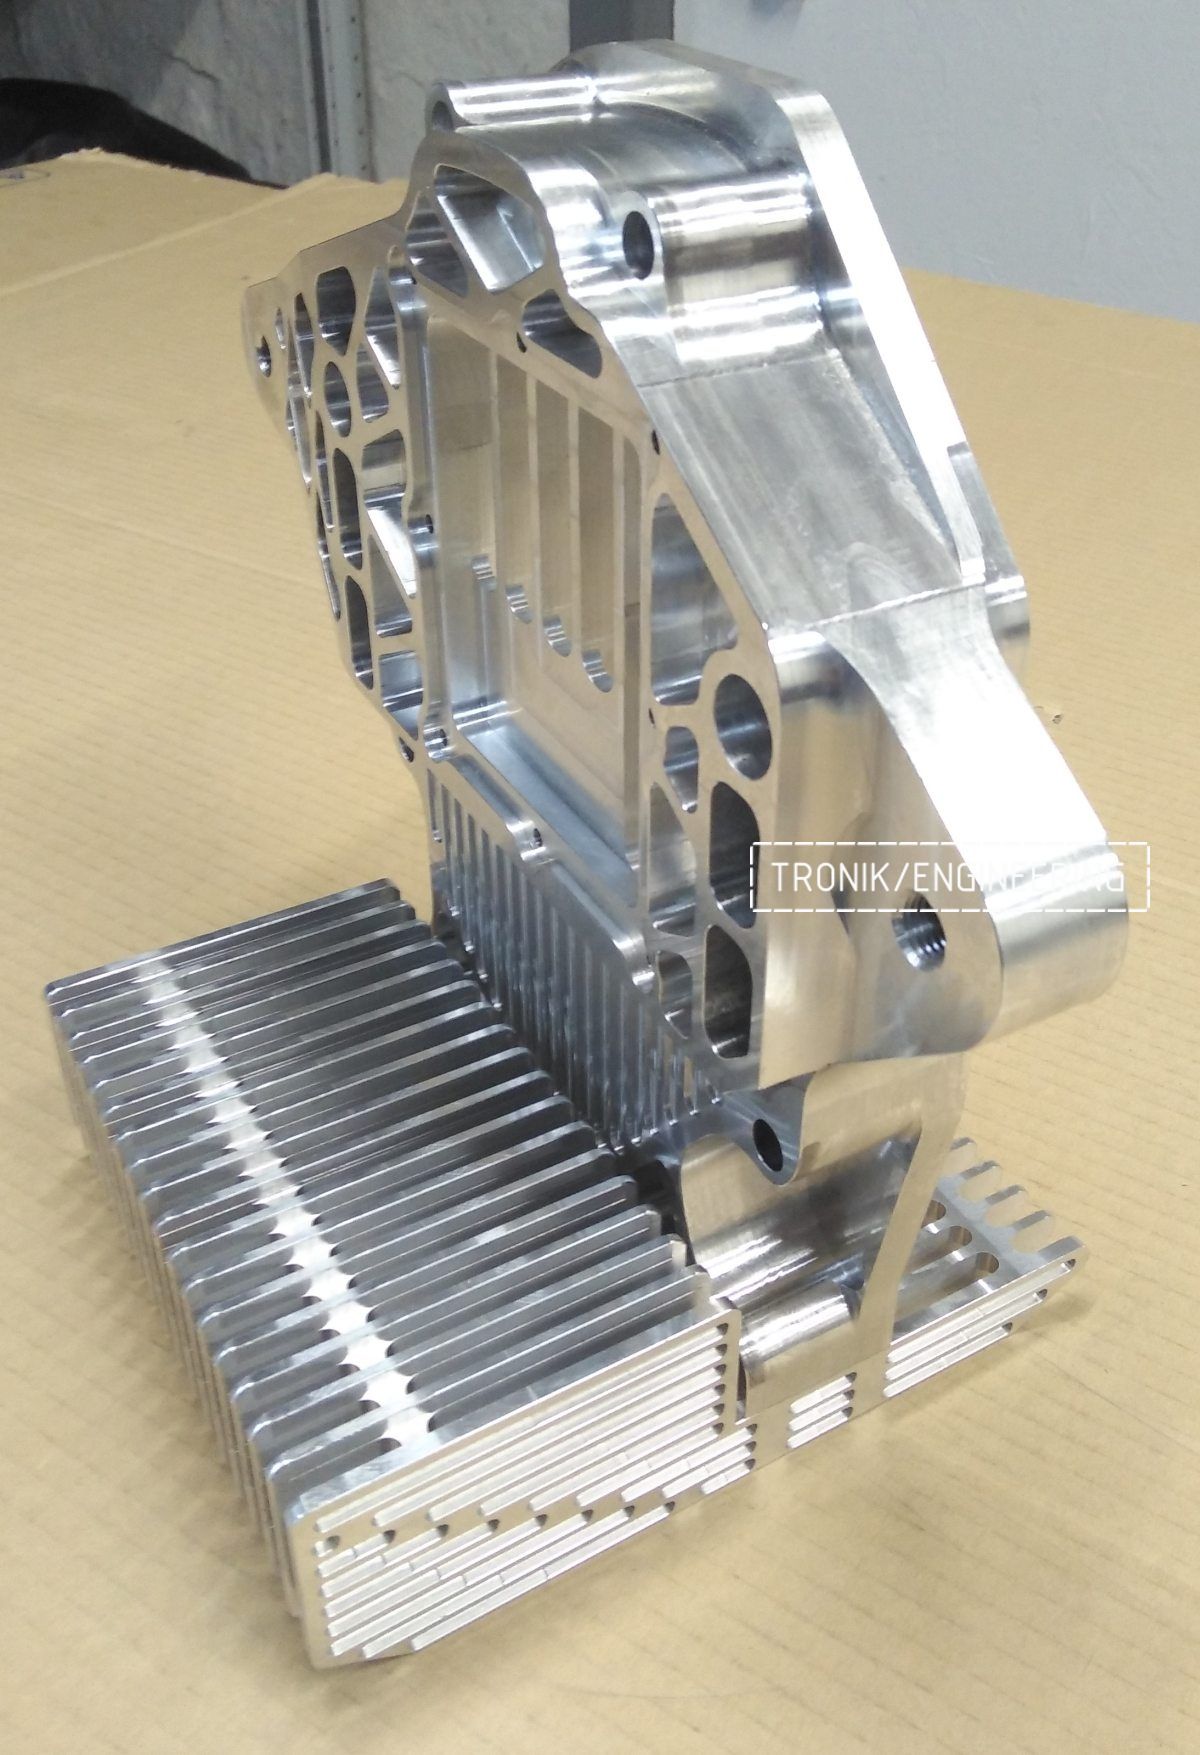 Крышка редуктора и радиатор охлаждения для дифференциала Quaife differential на Мерседес Бенц Волчок Е60 АМГ. Фото 9